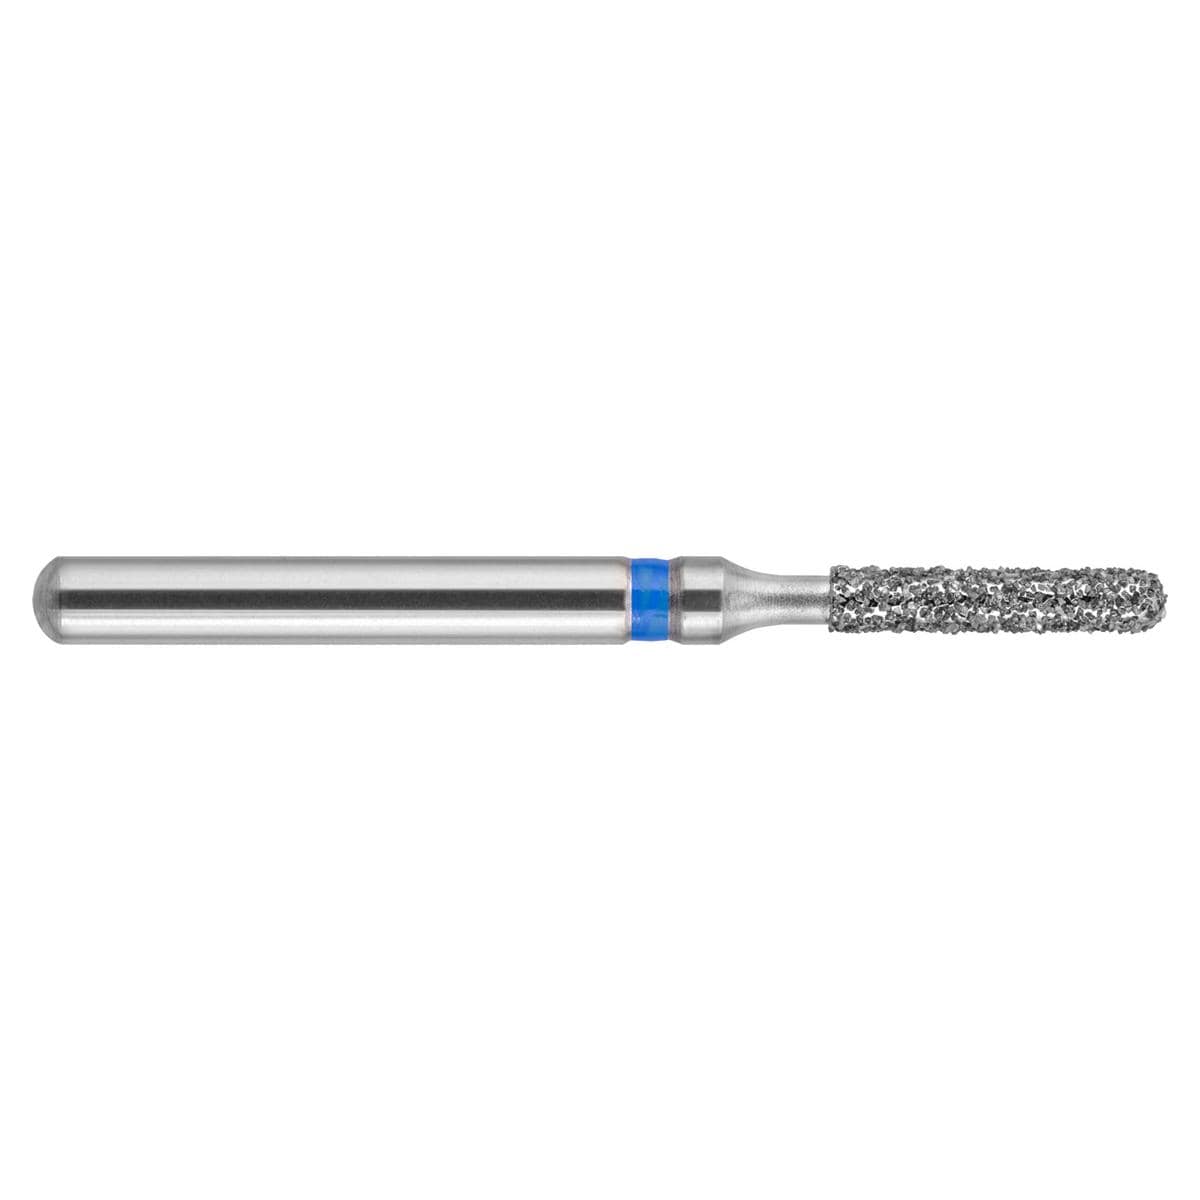 NeoDiamond FG, Form 140, Zylinder rund, kurz - ISO 014, mittel (blau), Packung 10 Stück